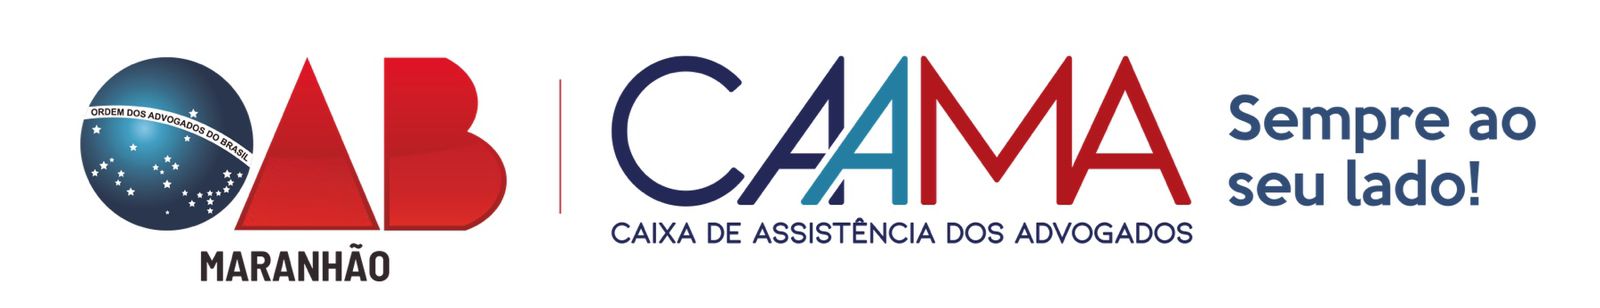 Logo Caama